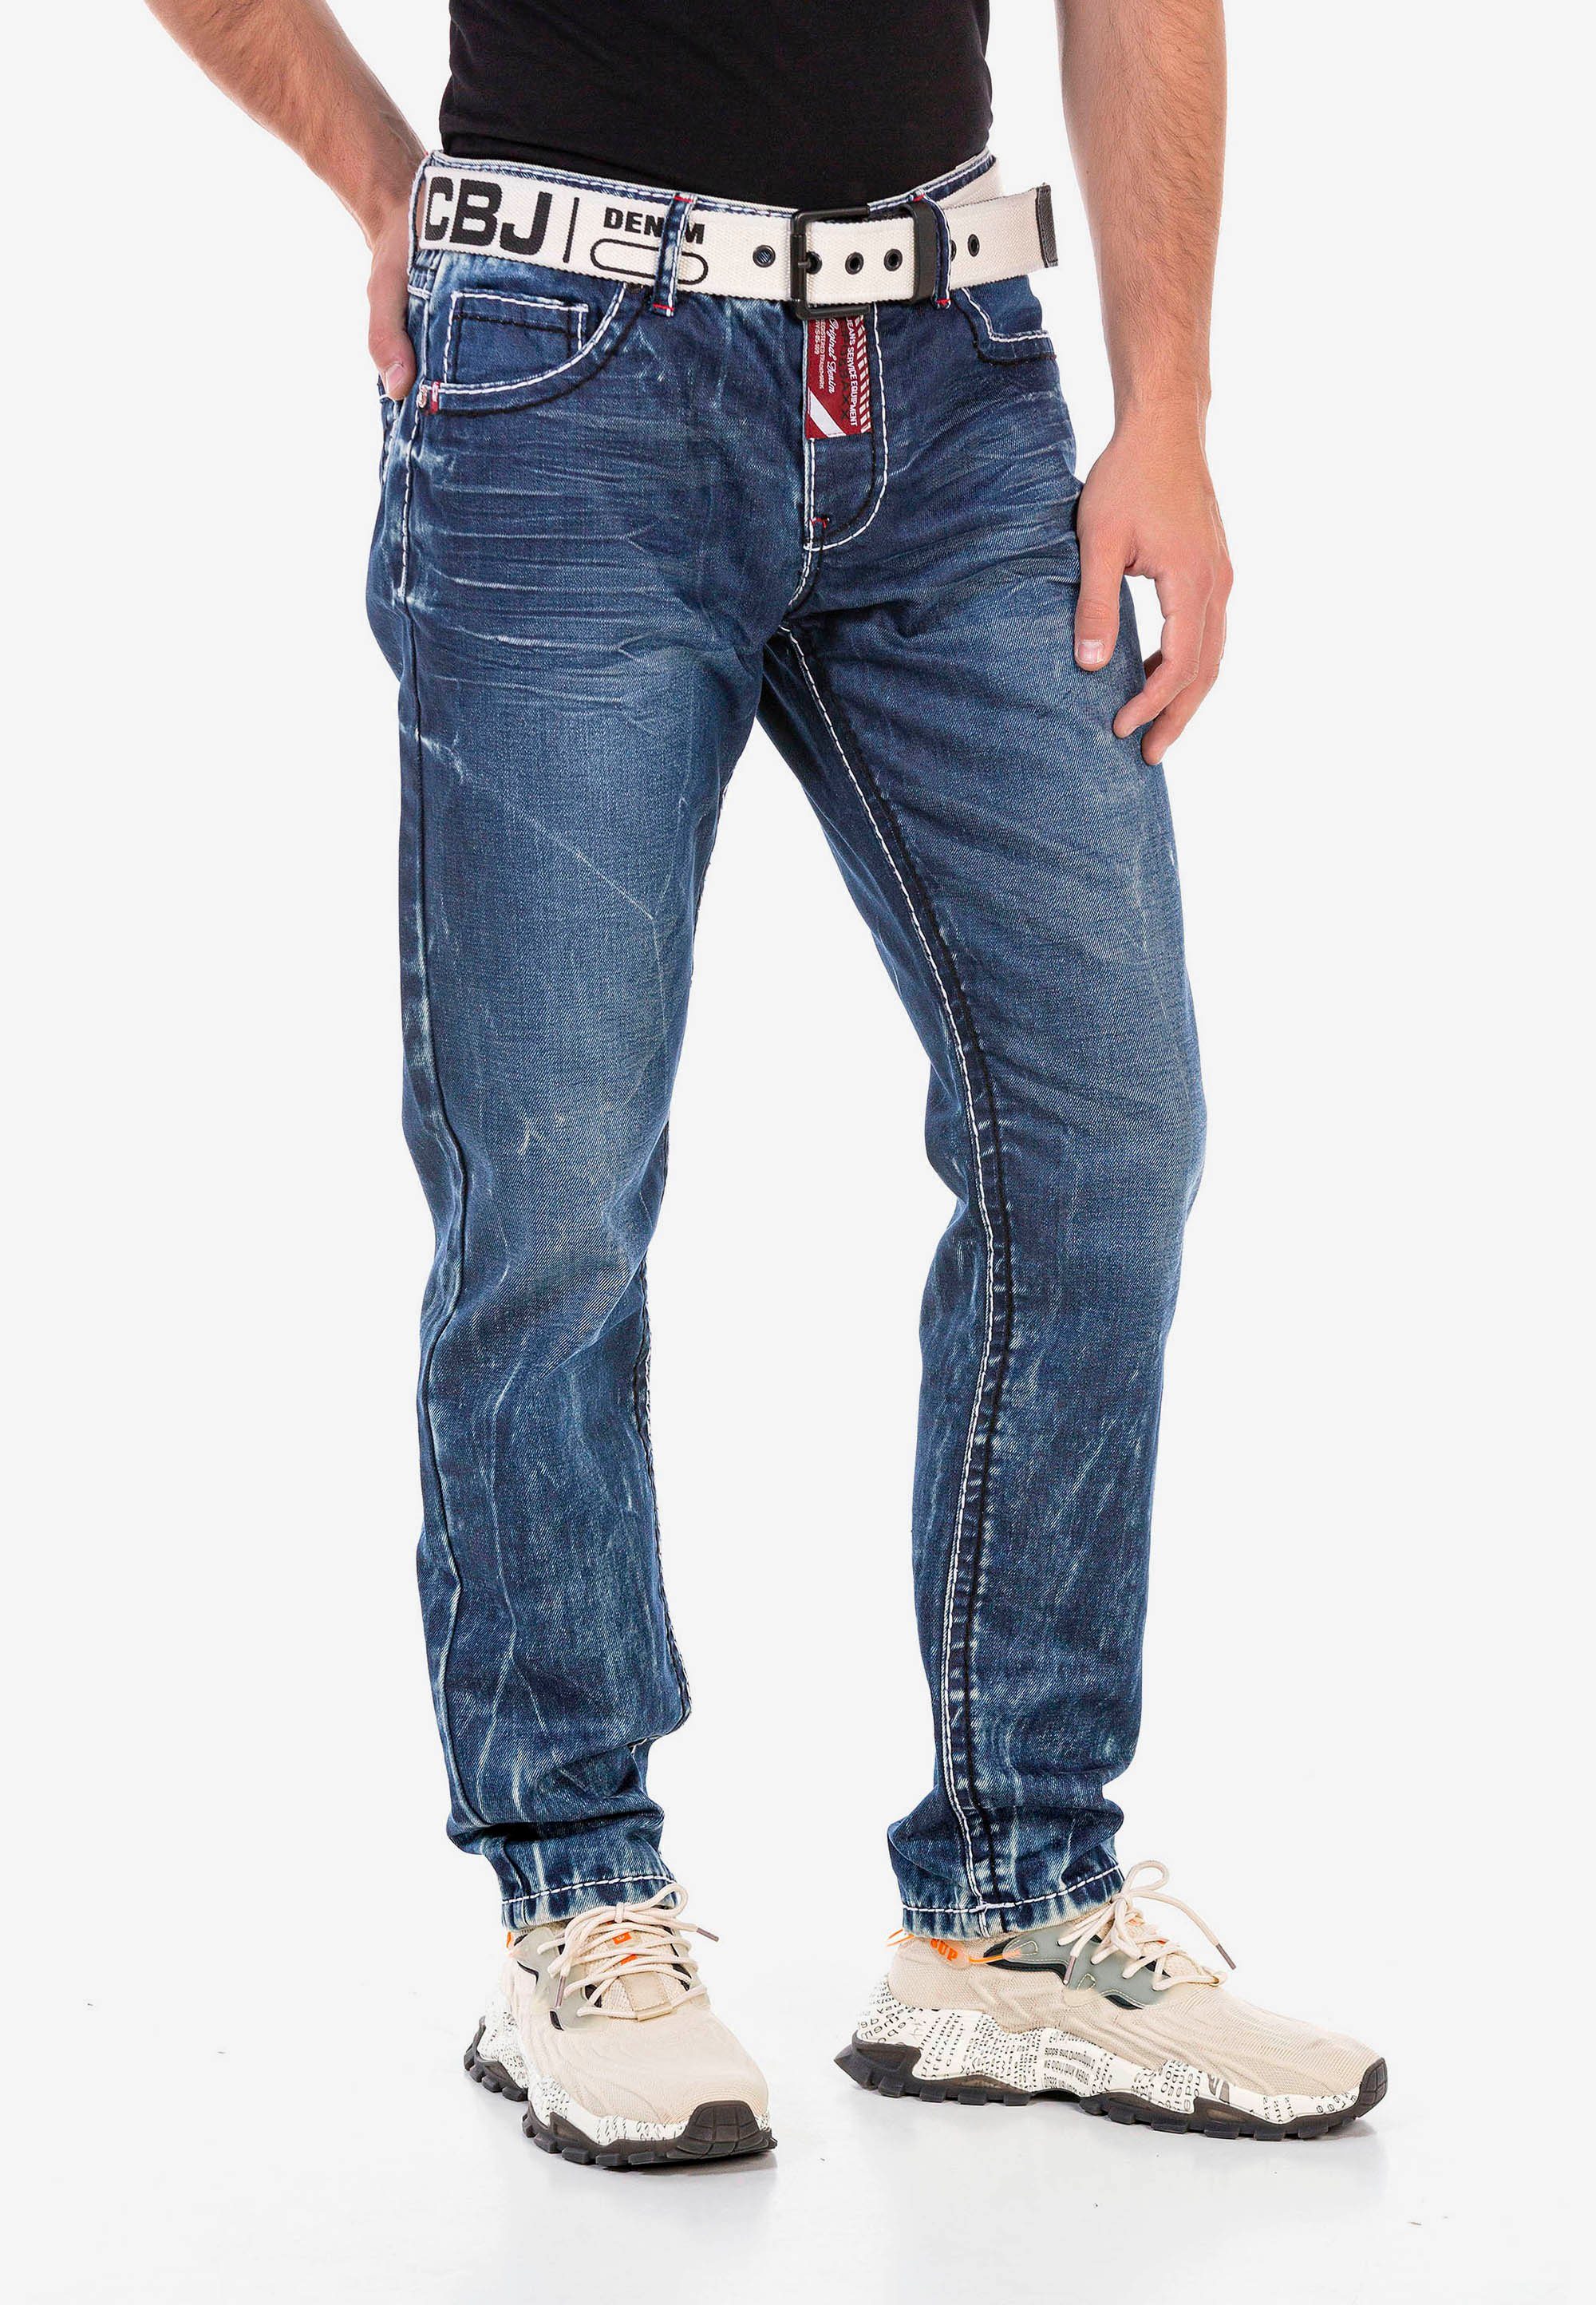 & Waschung Straight-Jeans extravaganter Baxx Cipo mit